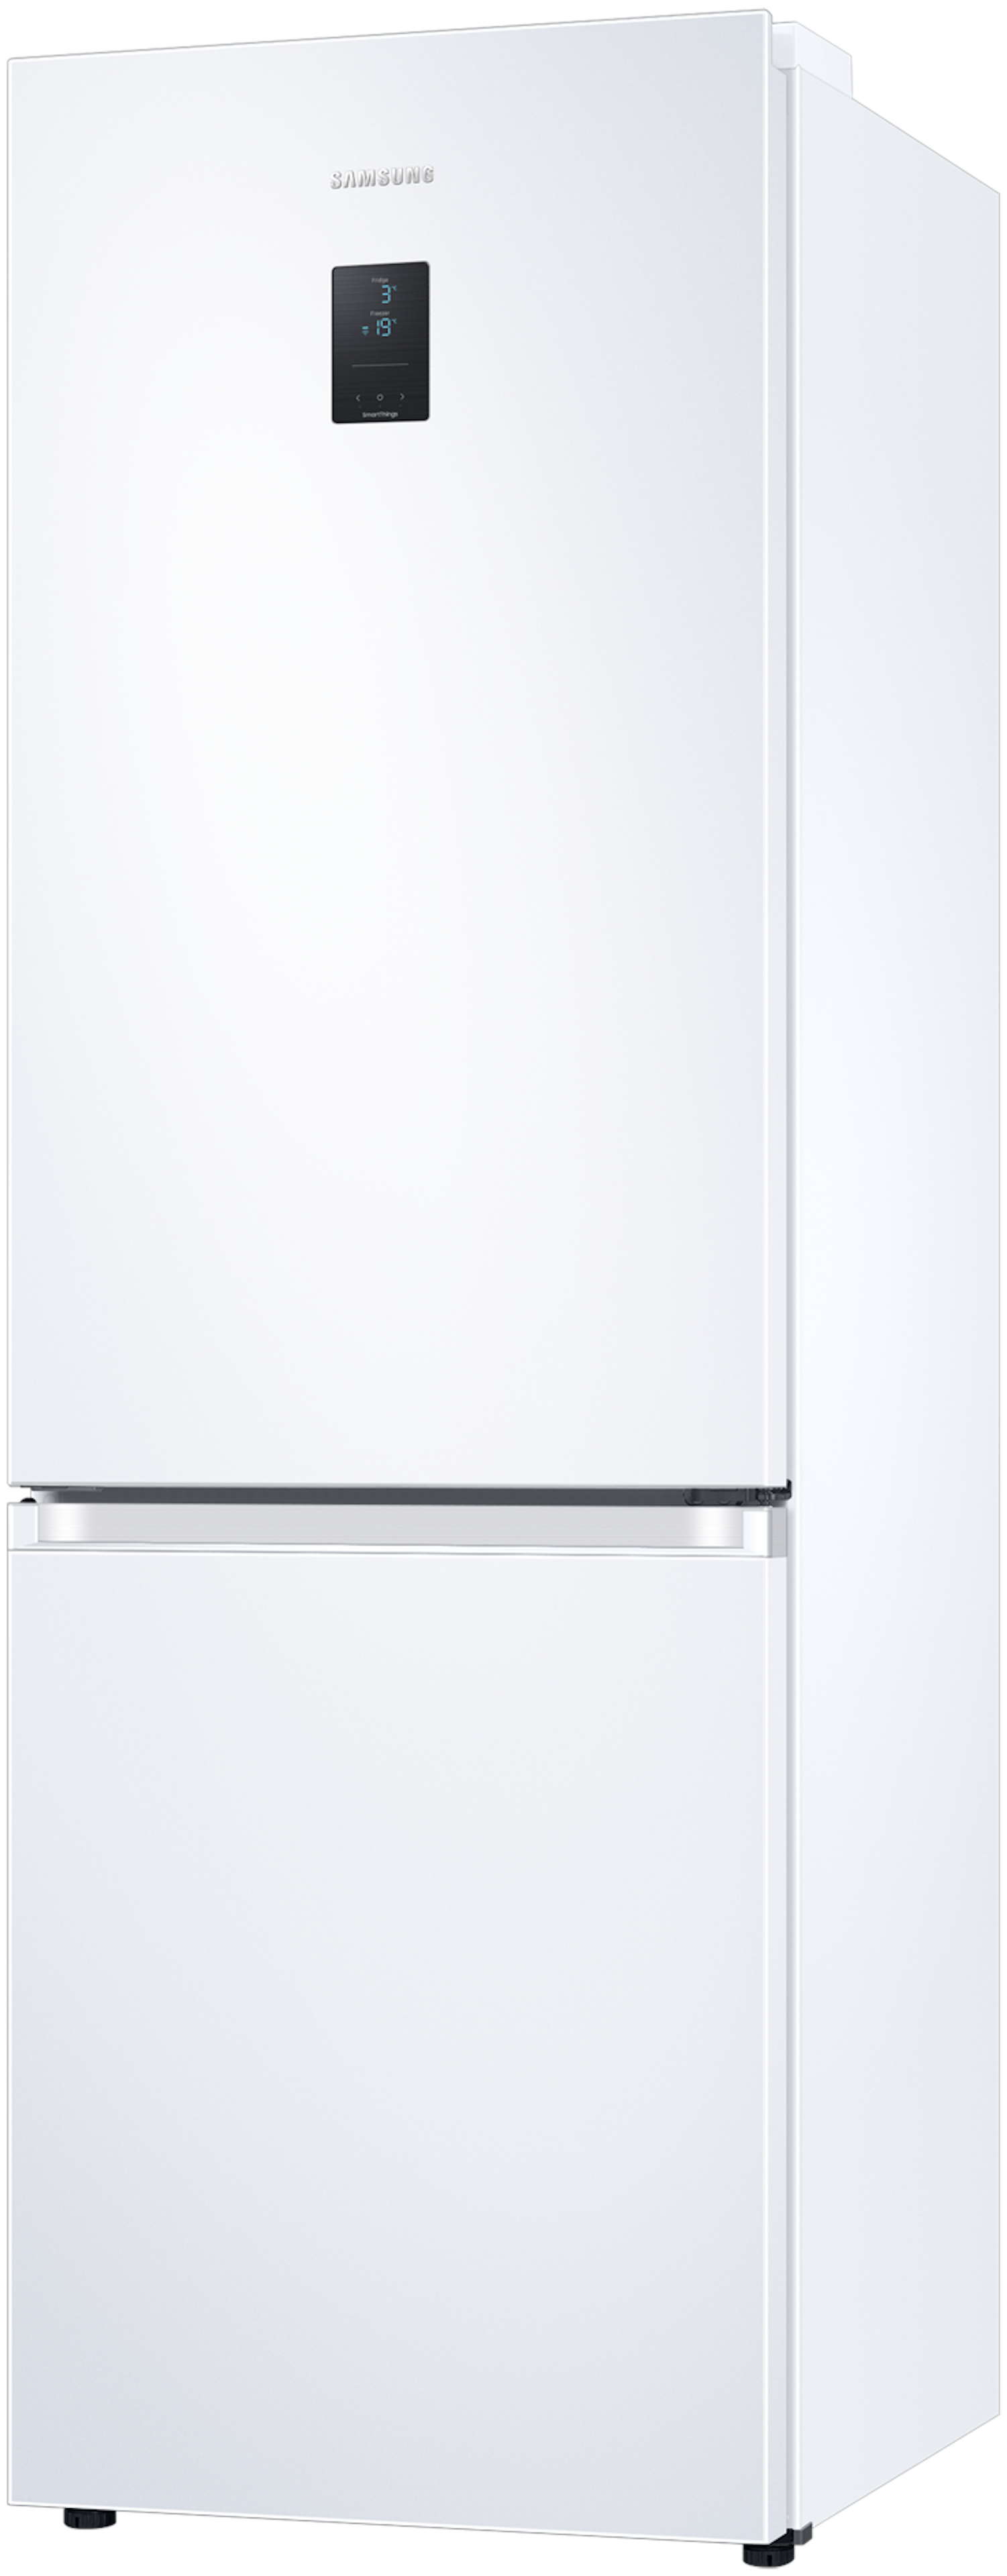 Samsung RB34C670DWW/EF vrijstaand koelkast afbeelding 6